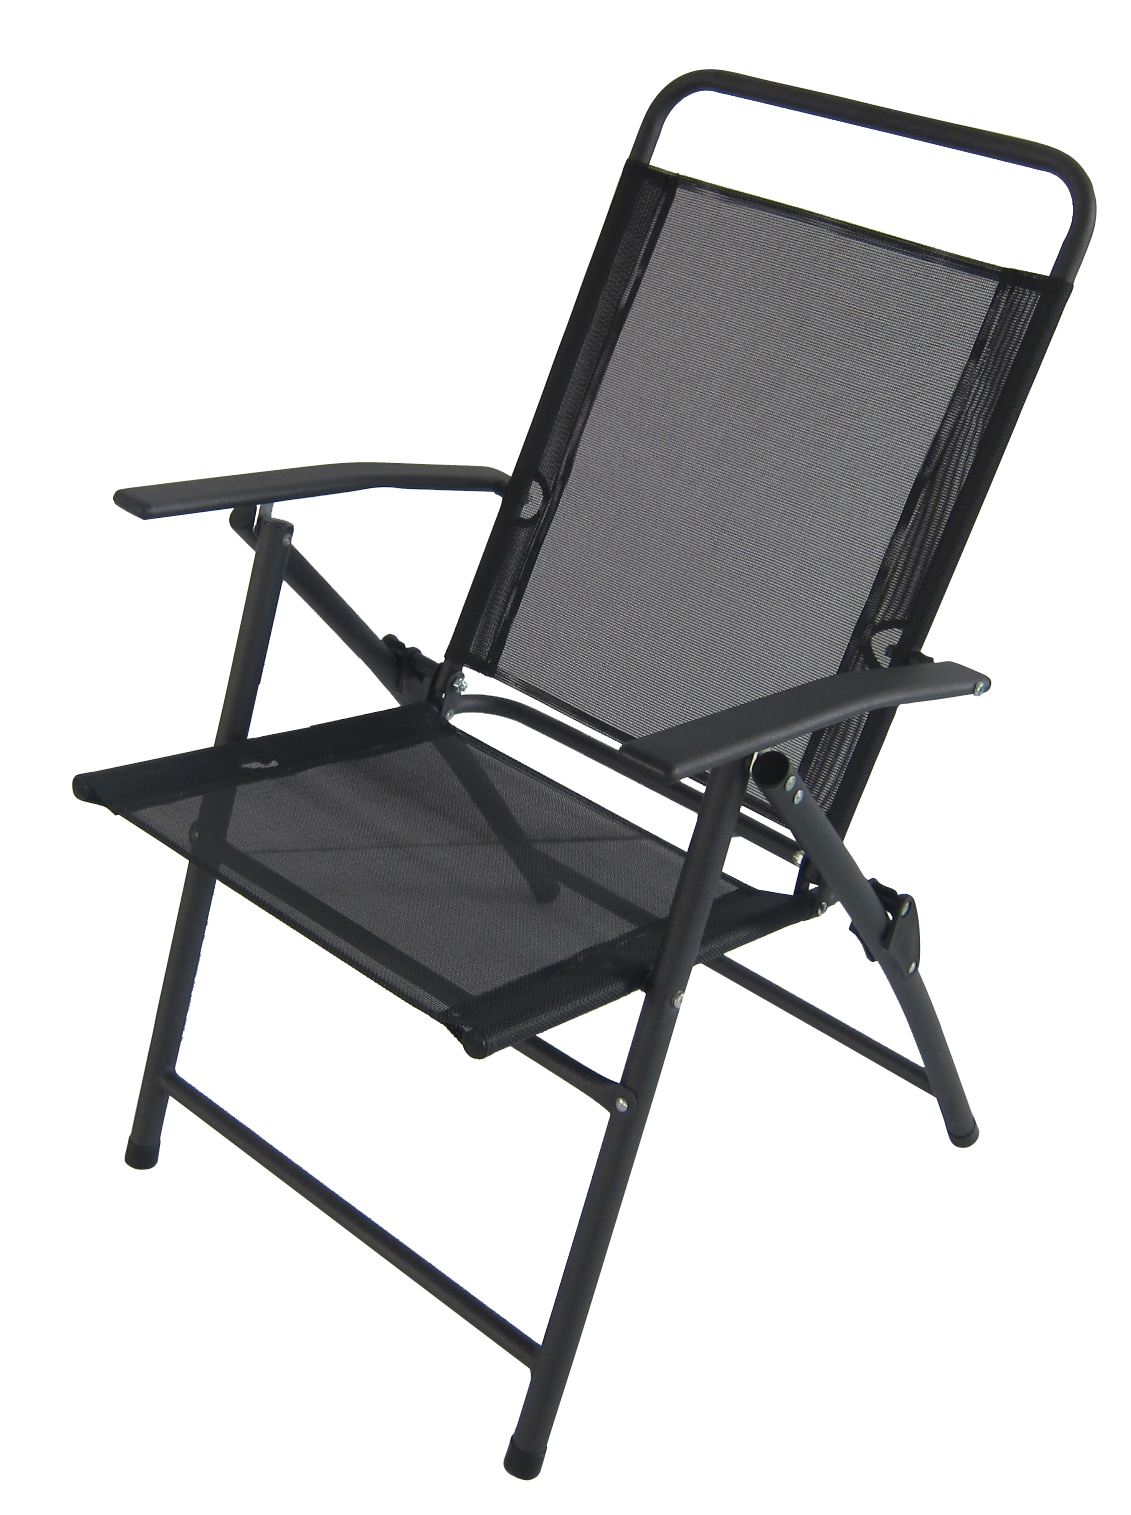 Adjustable tilt outdoor indoor garden terrace folding chair